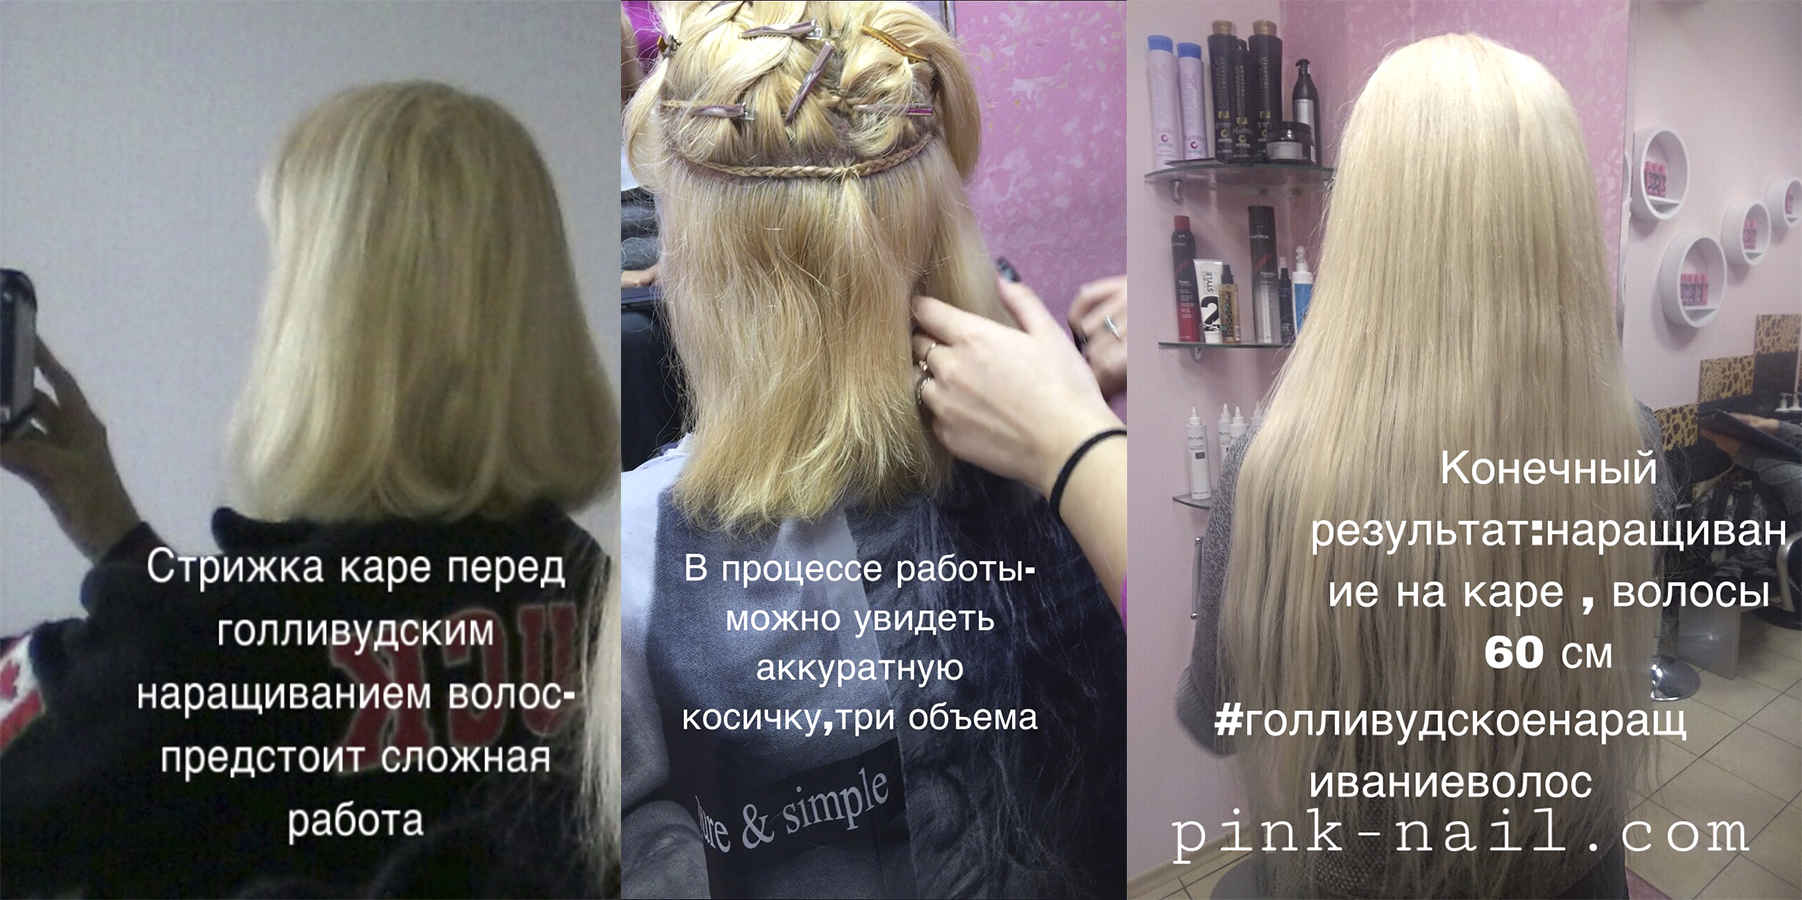 Голливудское наращивание волос Минск студия Розовая пантера